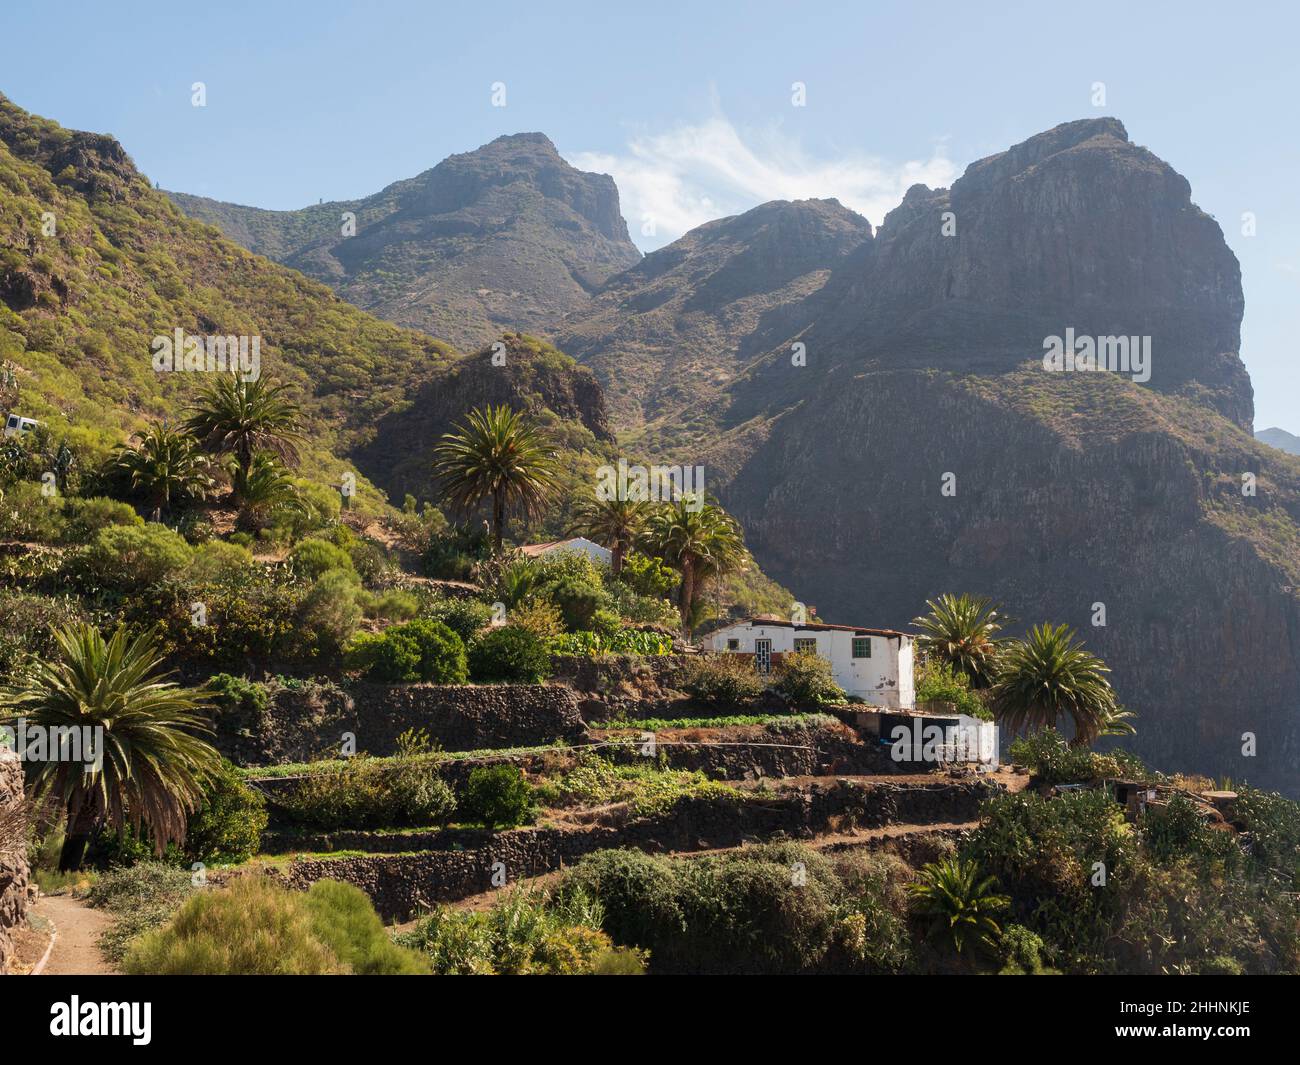 Pueblo de Masca, Montañas Teno, Tenerife, Islas Canarias. Una pequeña finca o explotación agrícola. Foto de stock